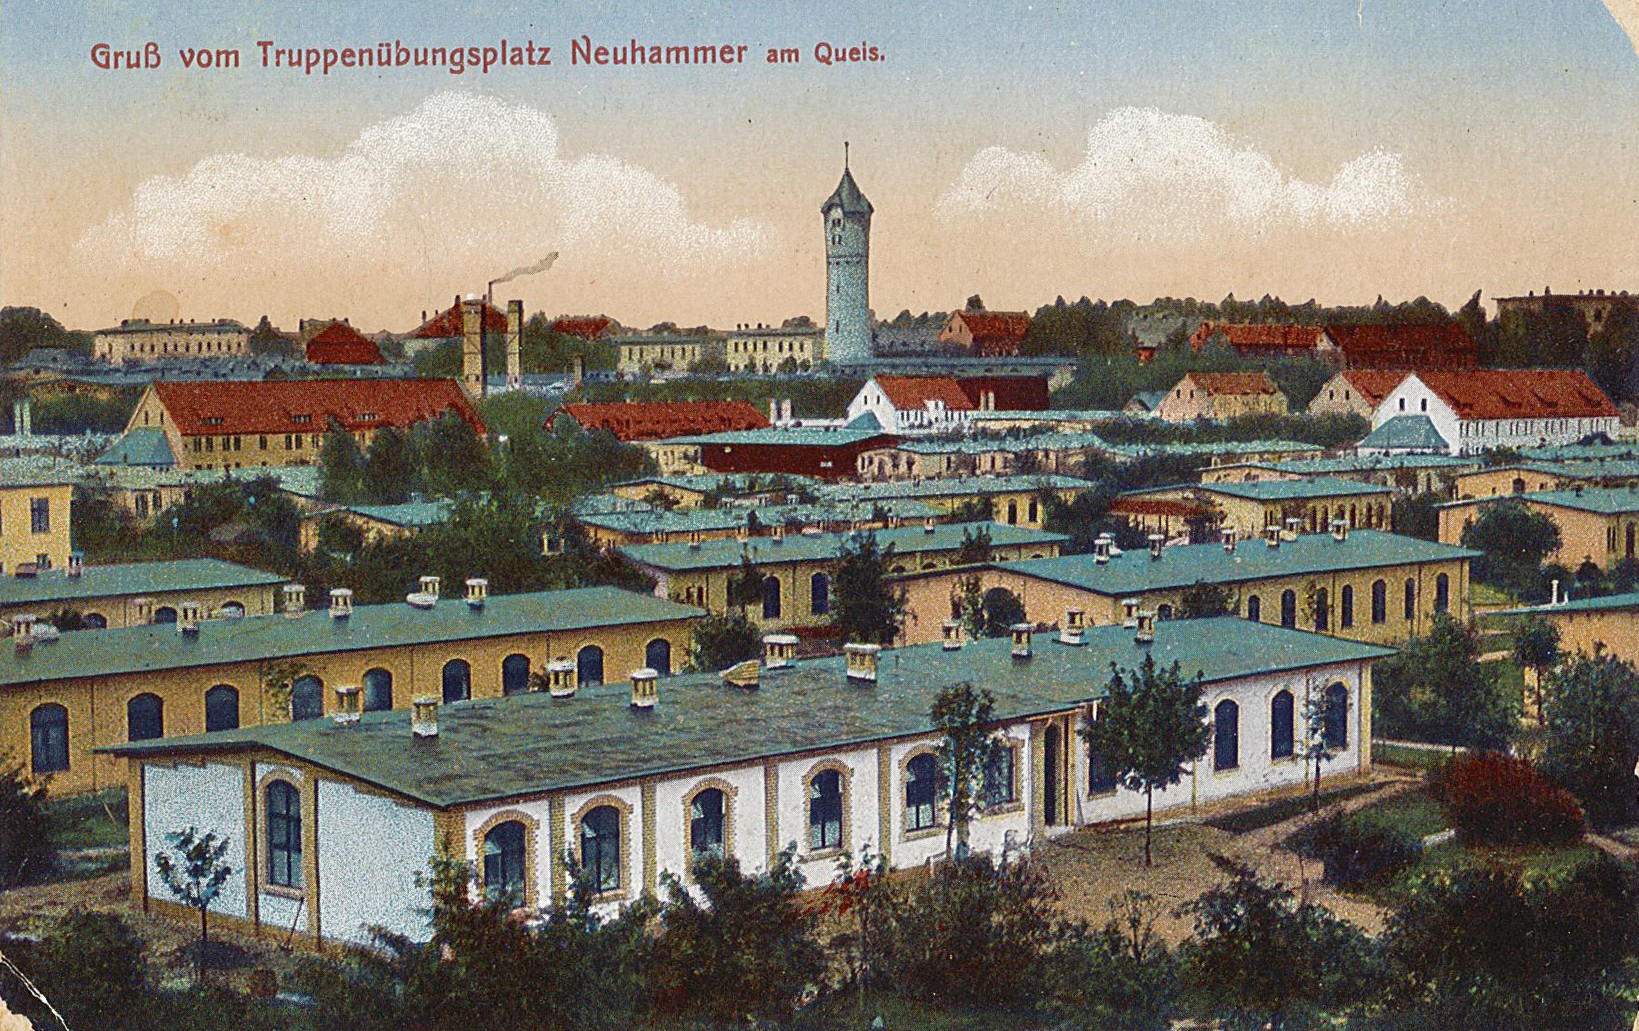 Postkarte von Wilhelm Henning an seinen Onkel Hermann Otto, 09.04.1916 (Museum Wolmirstedt RR-F)